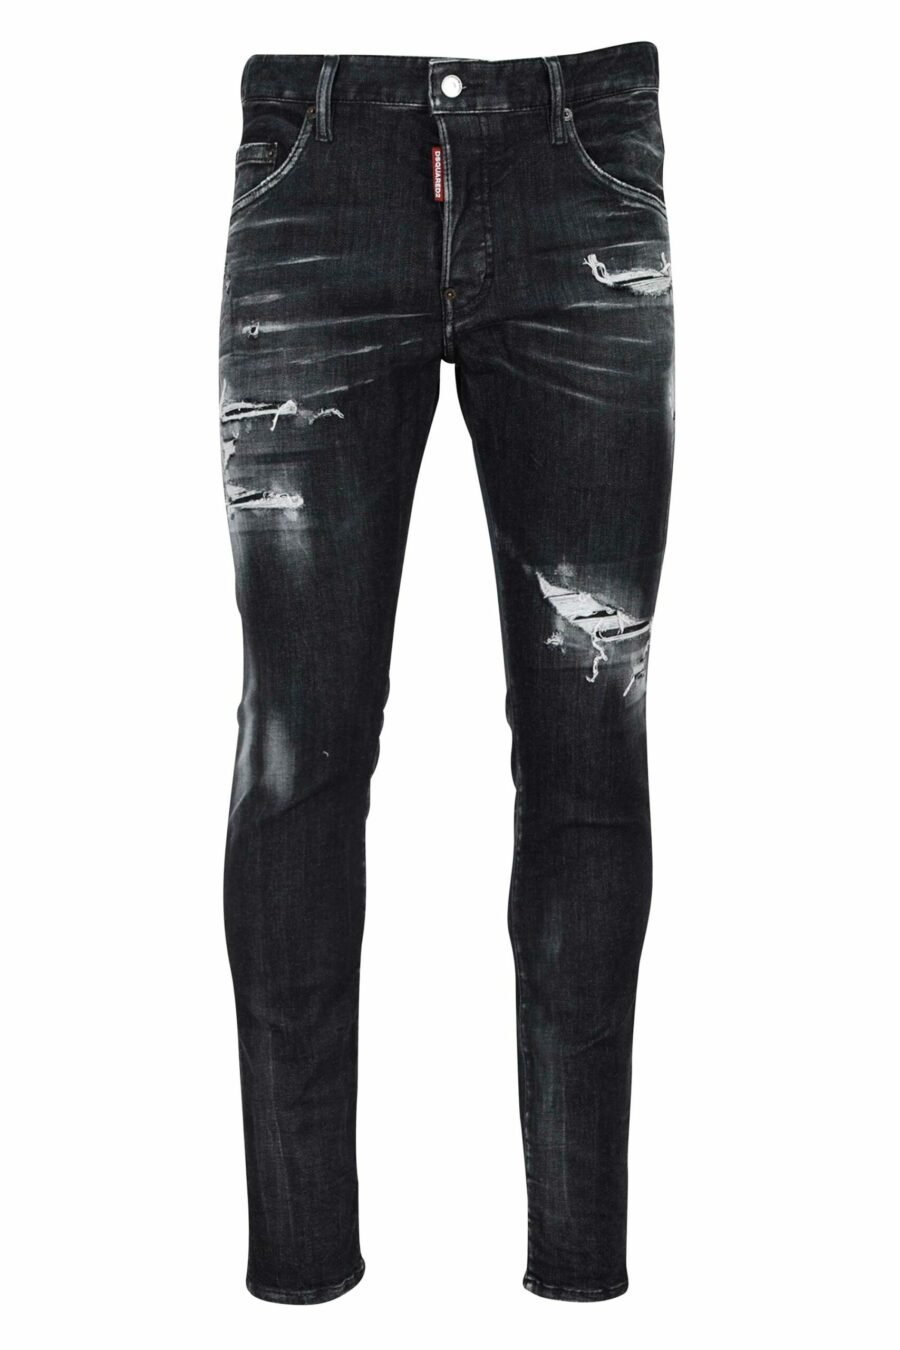 Pantalon Skater jean noir avec déchirures et semi-usure - 8054148101411 écaillé